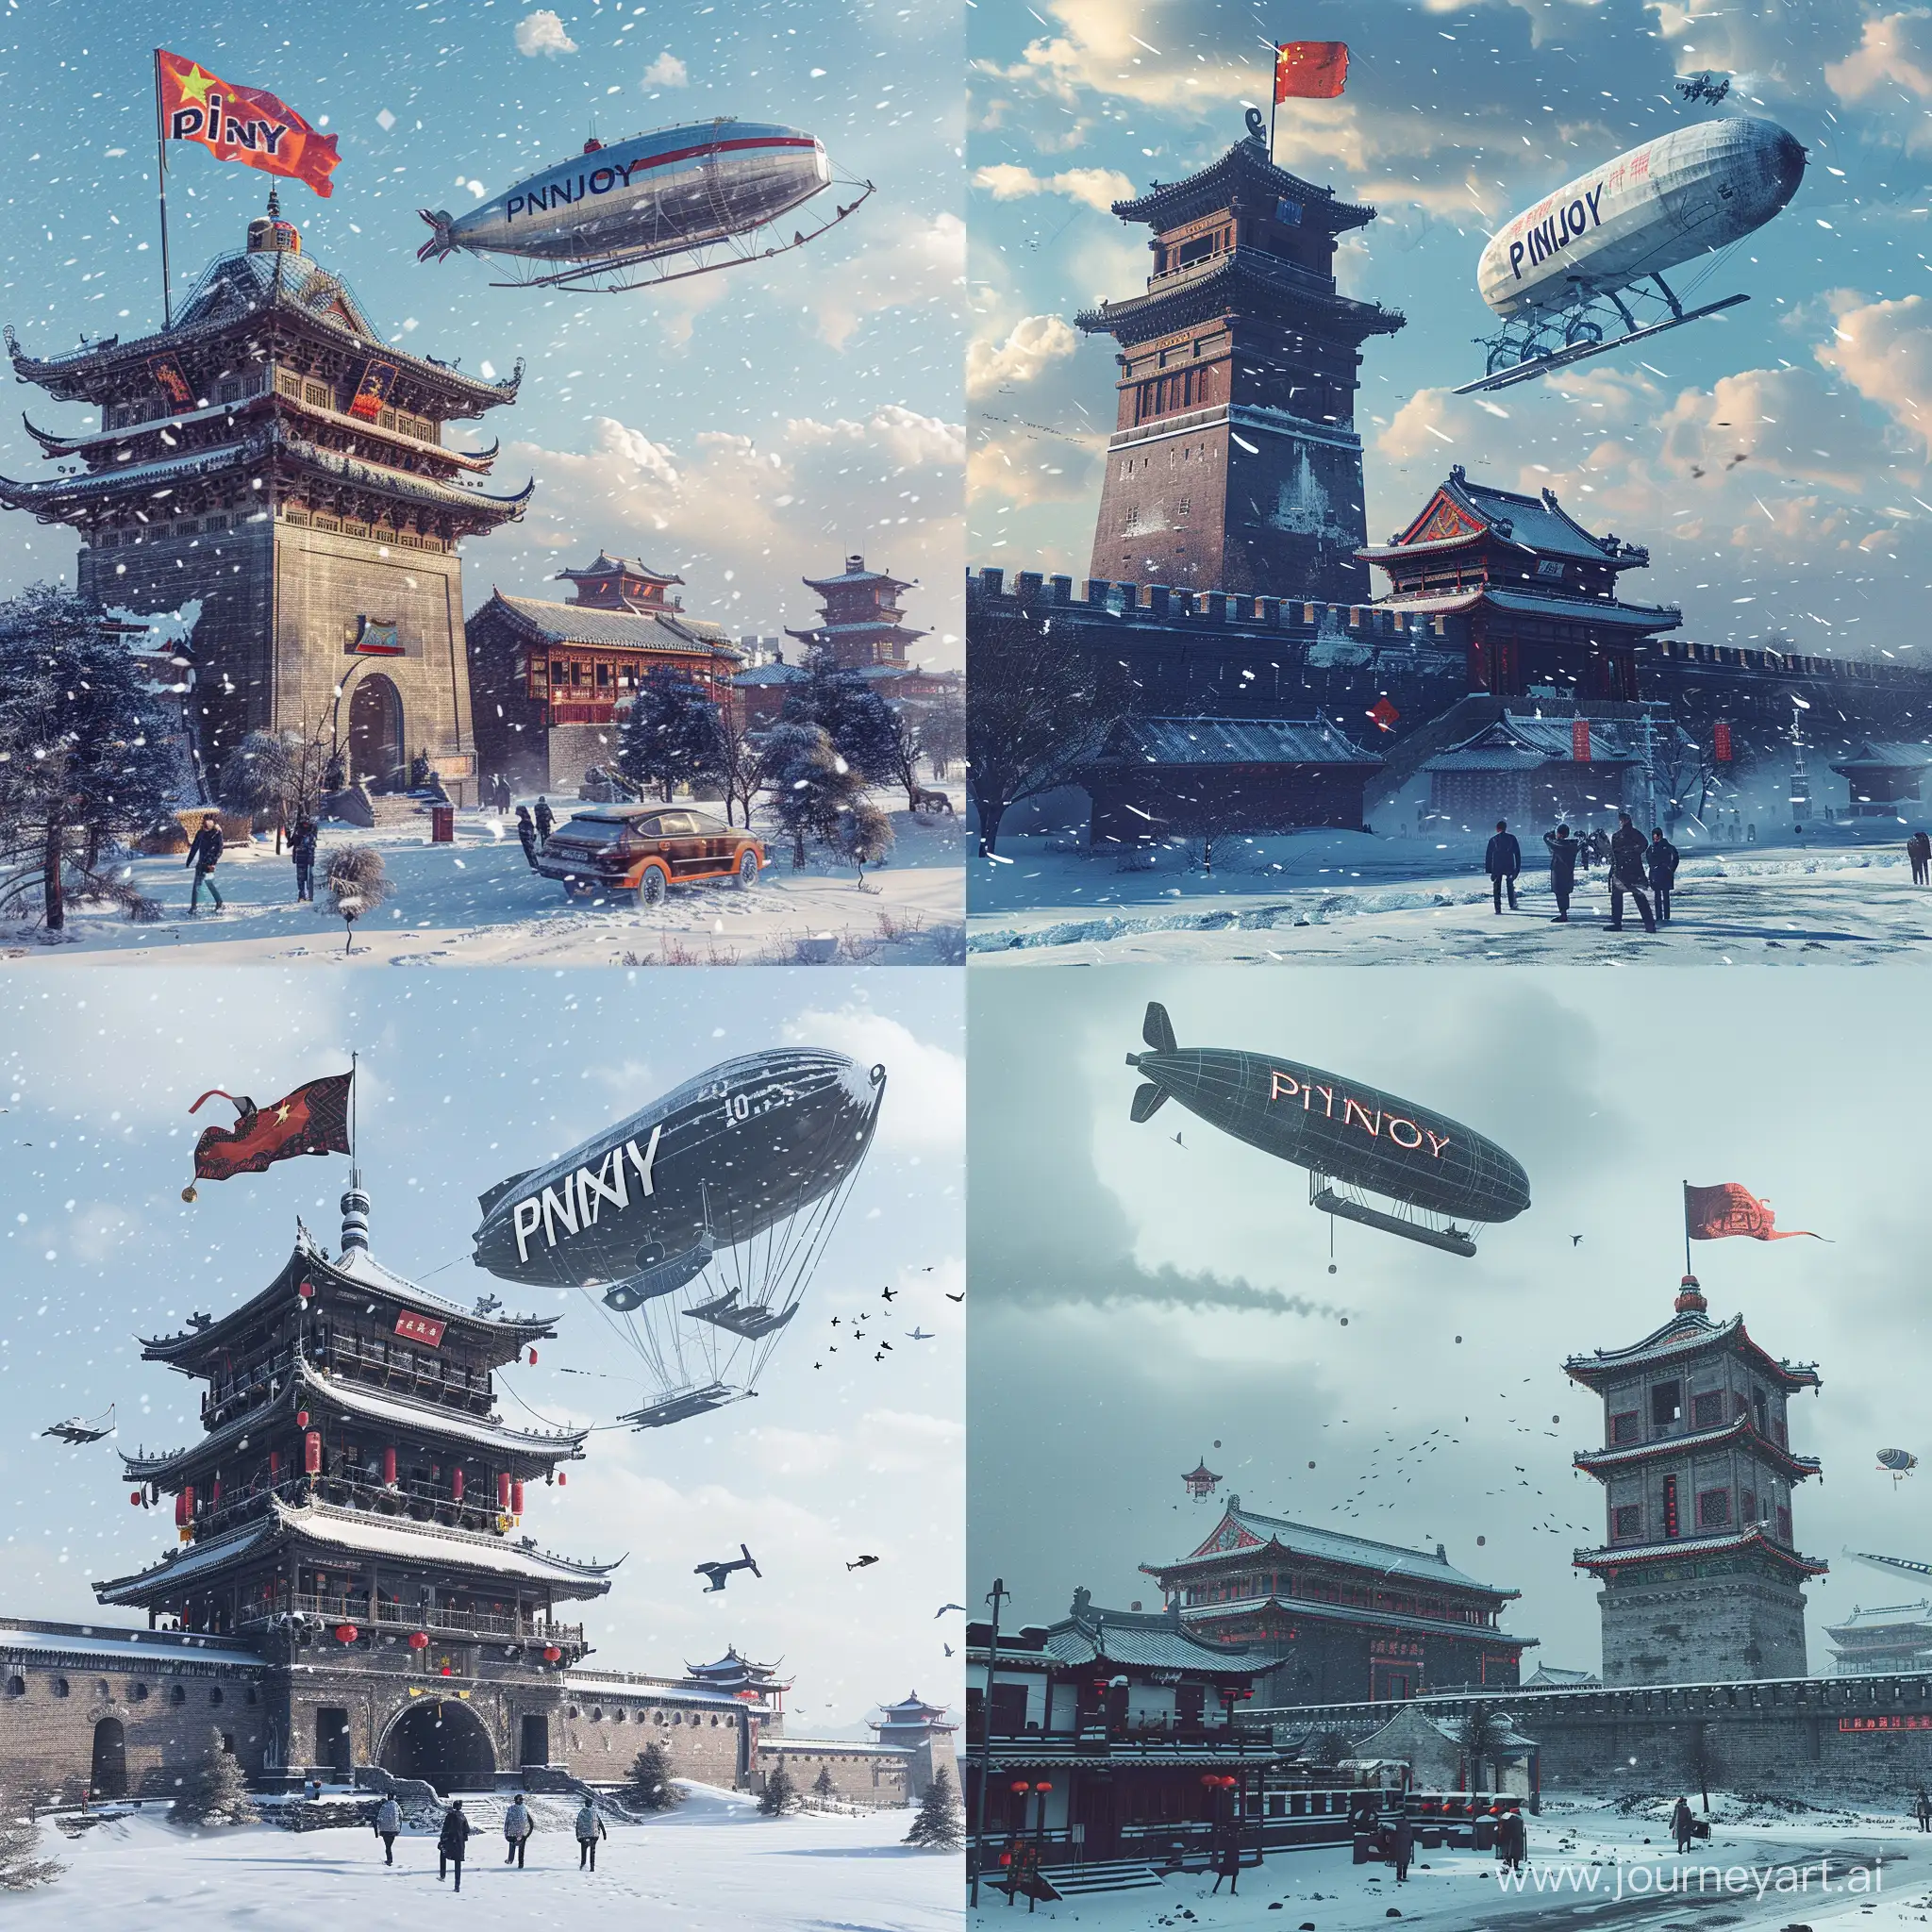 雪天的中国西安钟楼中国新年氛围赛博朋克风格，天空中飞一架巨大齐柏林飞艇，飞艇下挂PINJOY字母旗帜，电影质感。